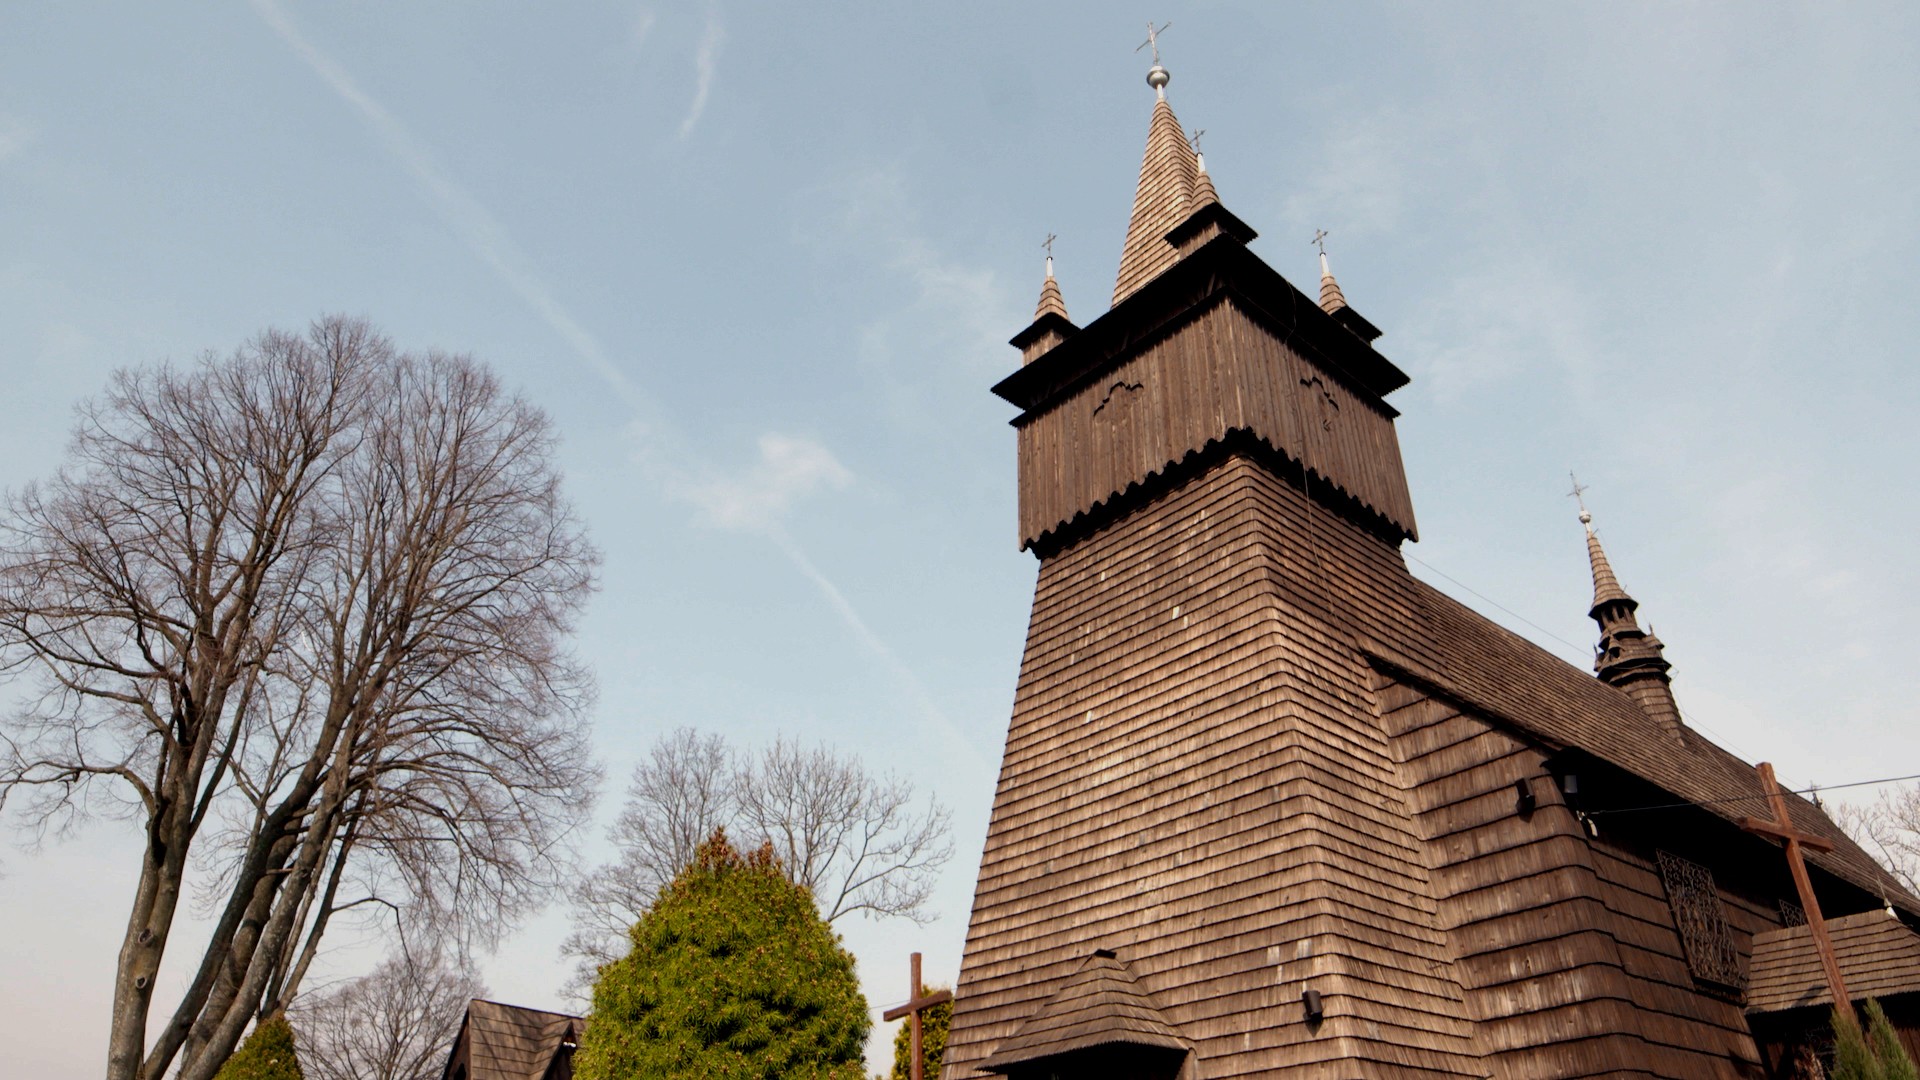 Wieża kościoła, obłożona ciemnobrązowym drewnianym gontem.